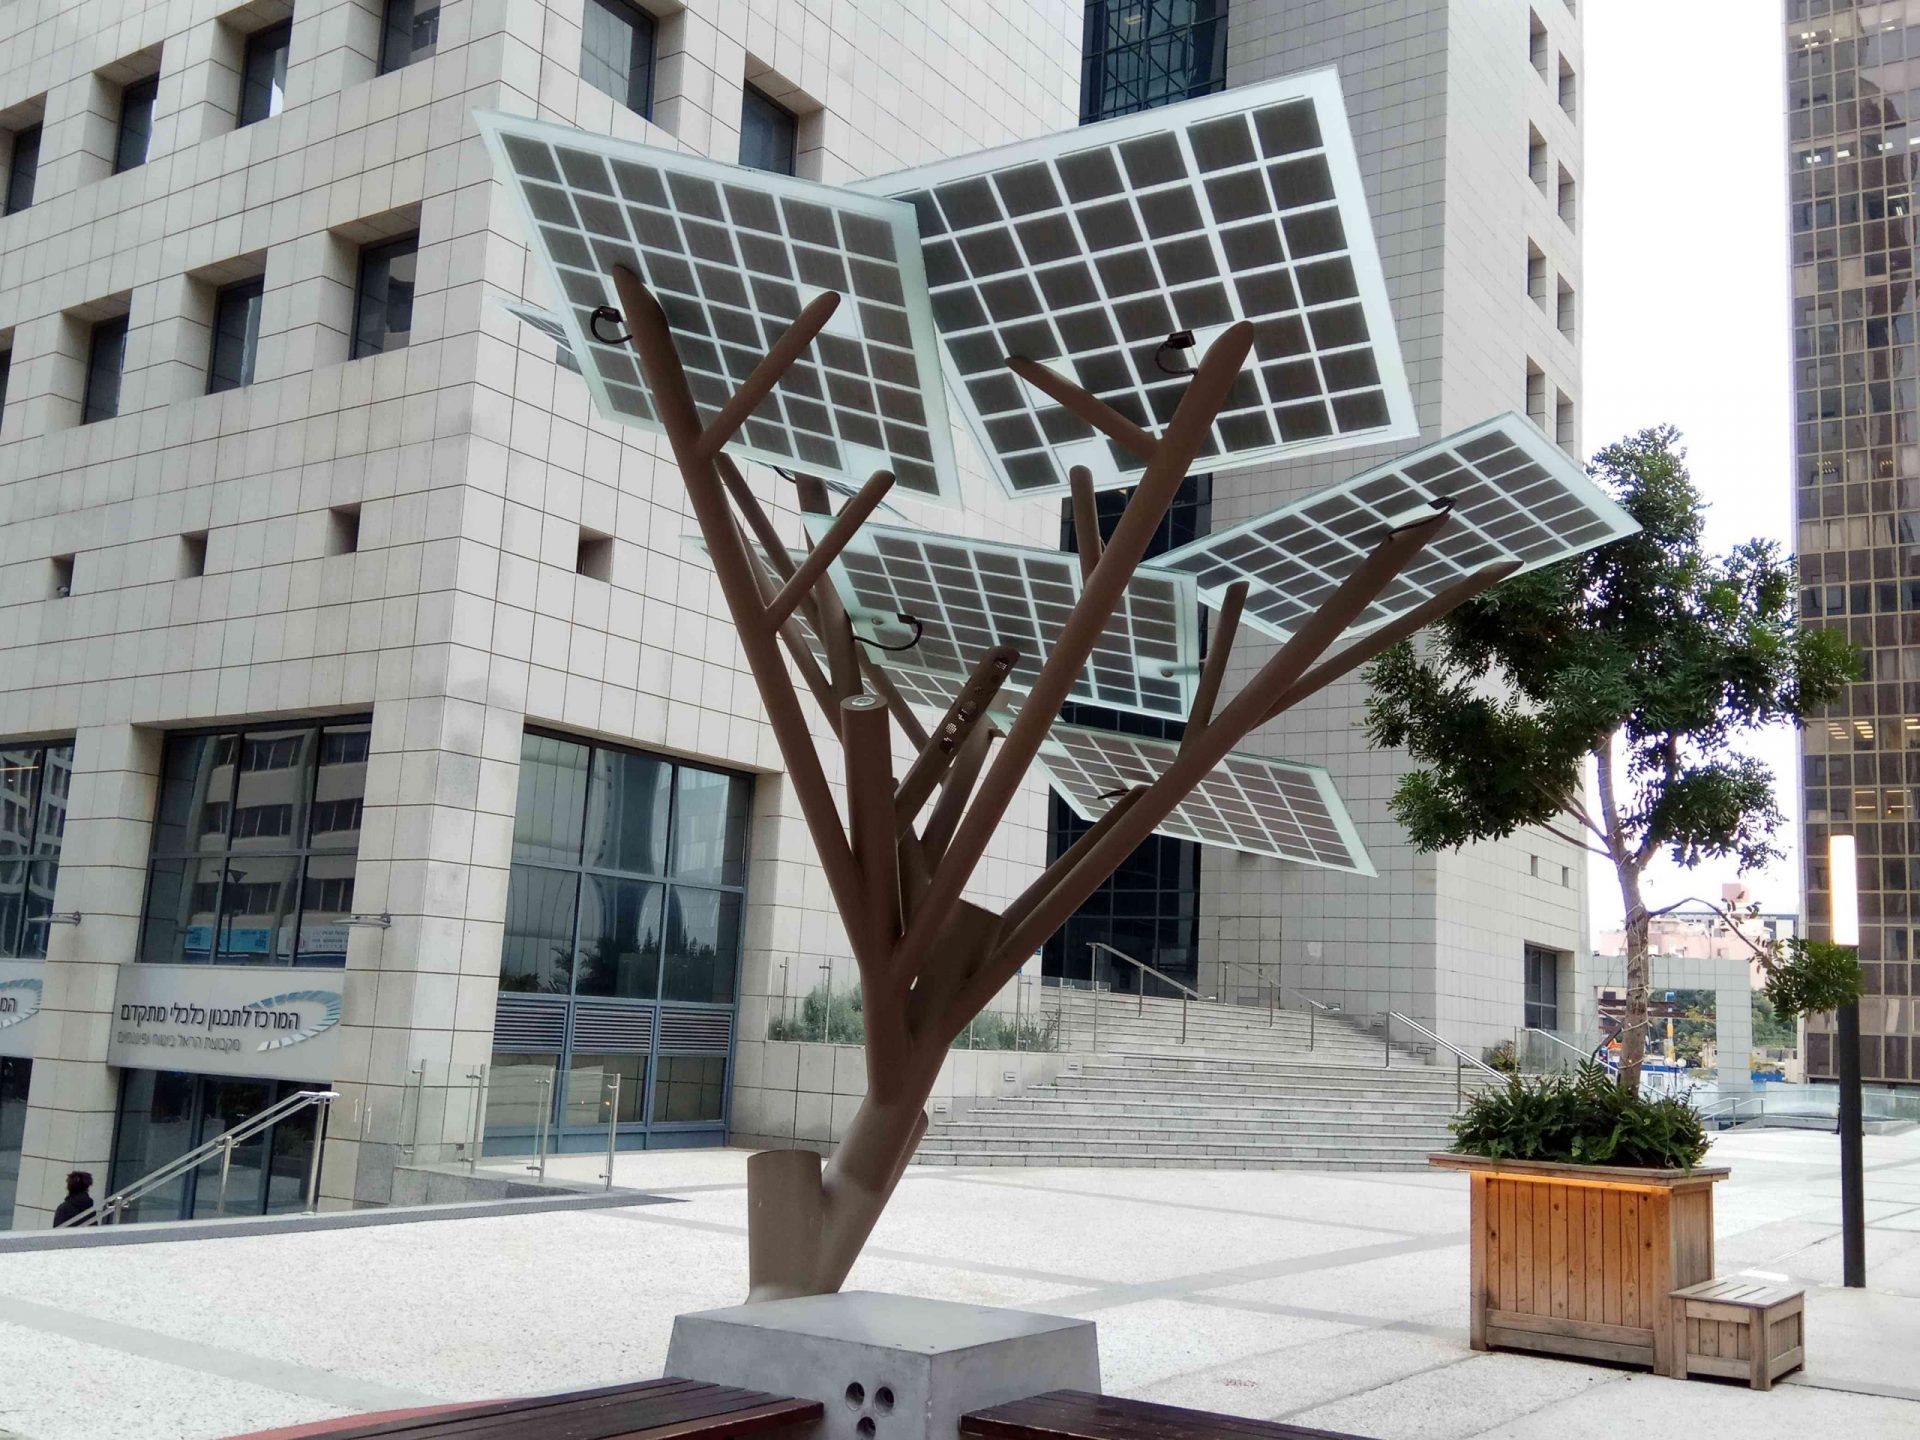 Un árbol solar en Ramat Gan tiene paneles solares cuadrados que se extienden desde las ramas que se conectan a un tronco central